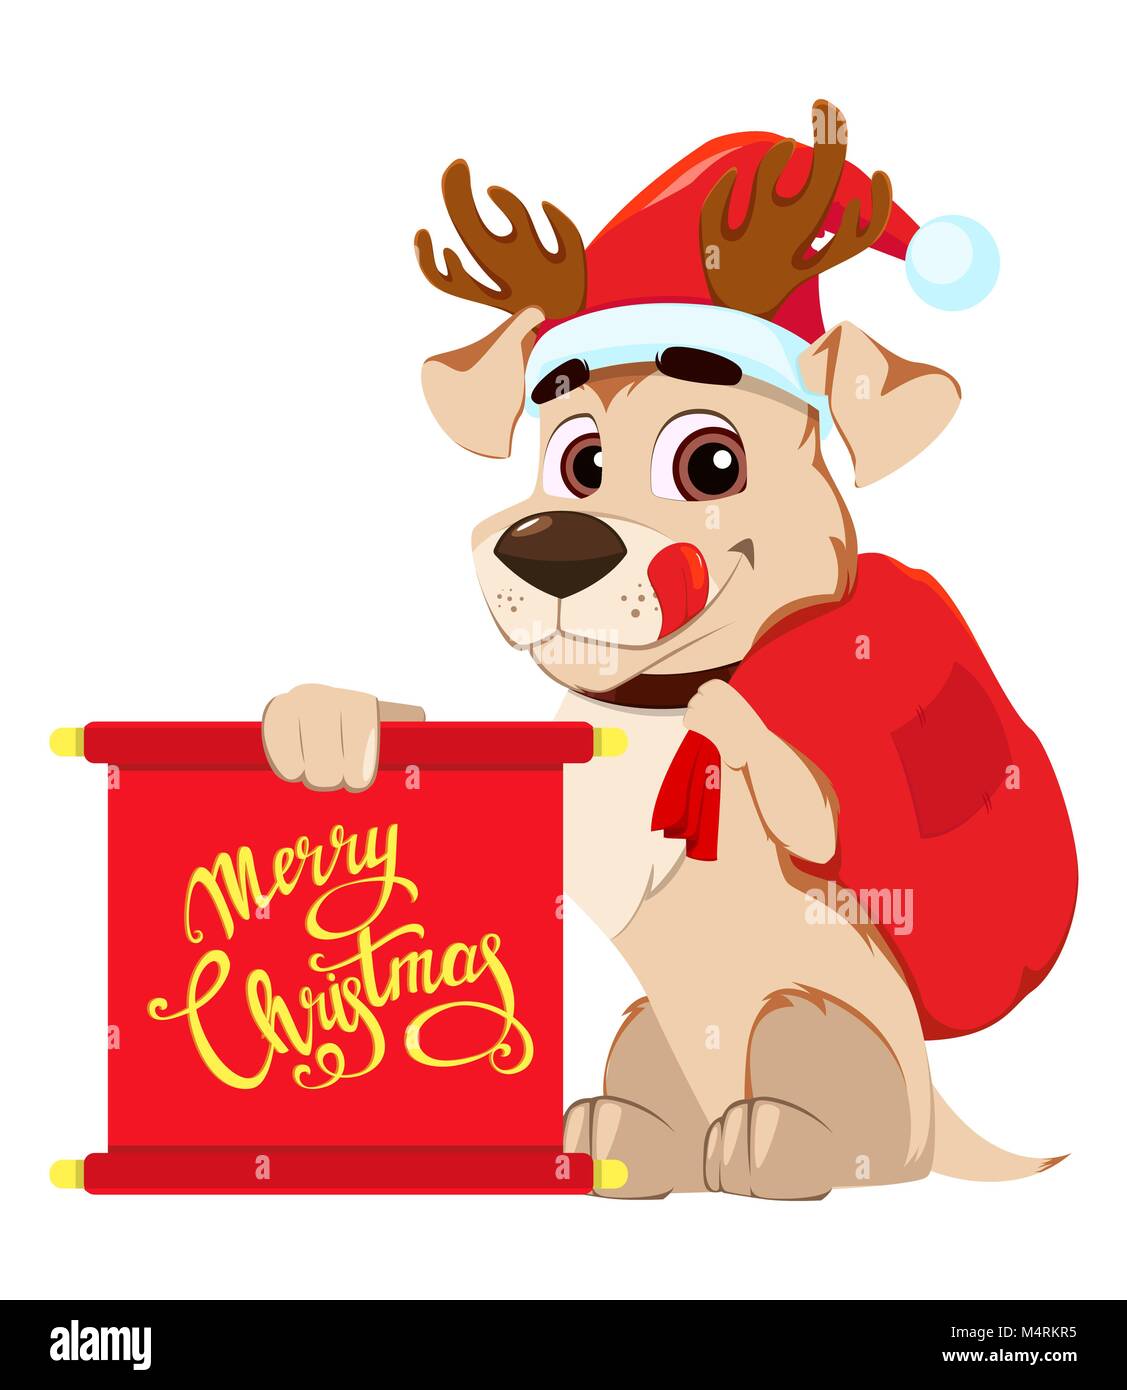 Frohe Weihnachten Grußkarte. Lustig Hund tragen Santa Claus hat und  Hirschgeweihe und halten Blättern mit Begrüßungen und Tasche mit  Geschenken. Vektor illustr Stock-Vektorgrafik - Alamy